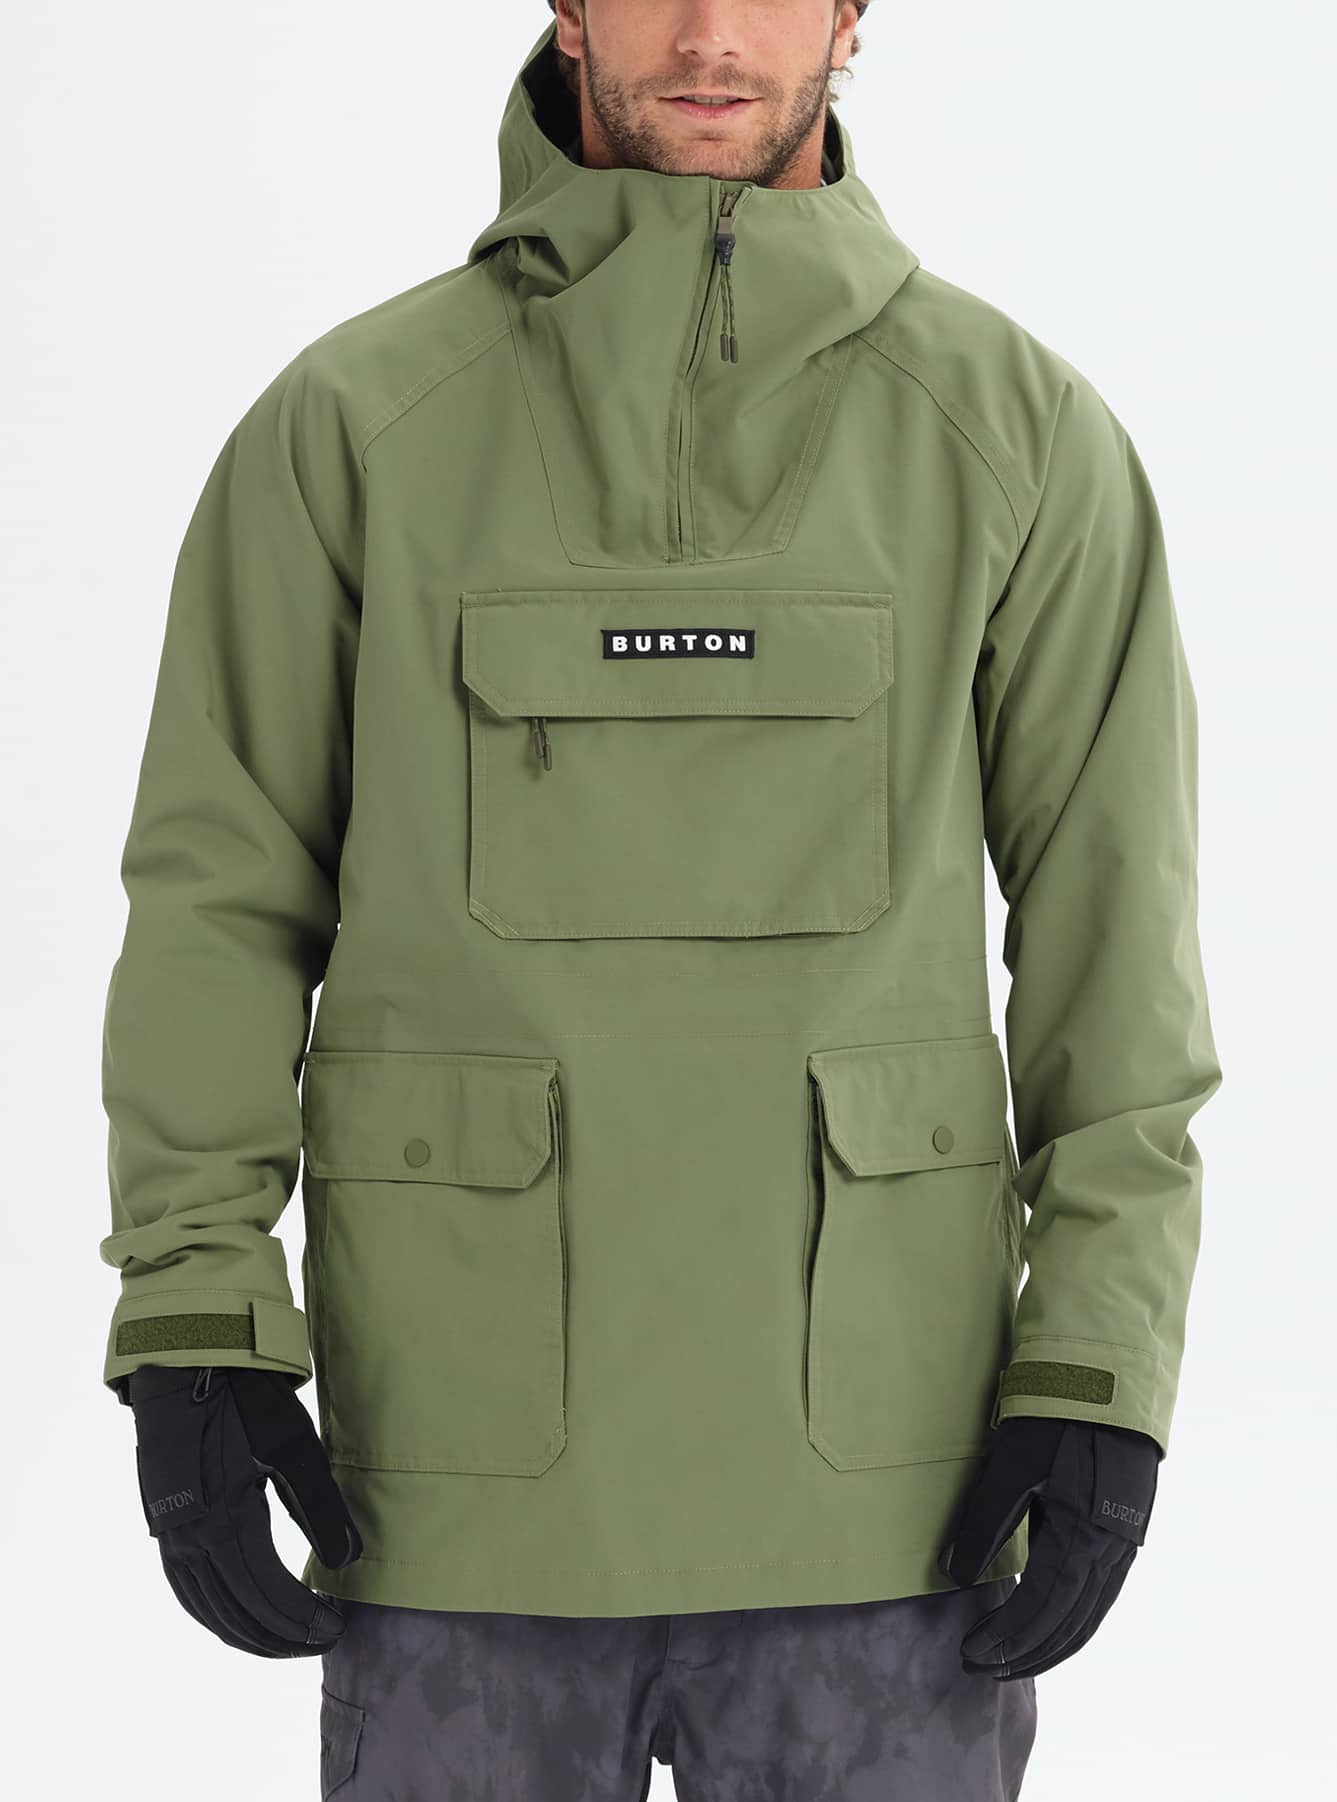 Men's Burton Paddox Jacket | Burton.com Winter 2019 US